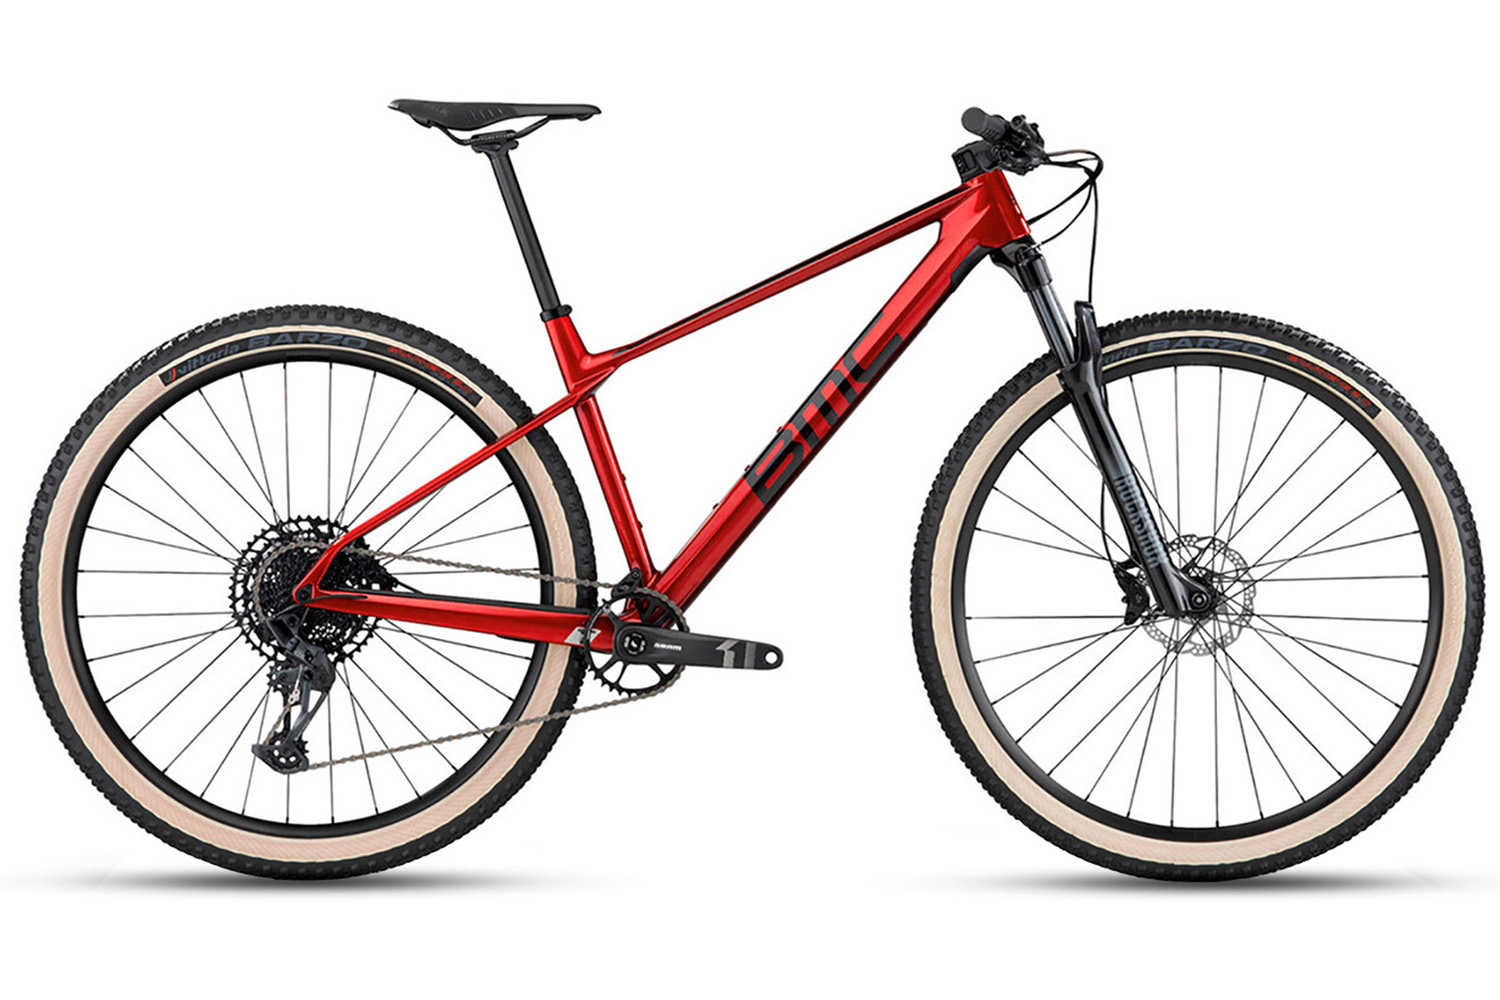  Отзывы о Горном велосипеде BMC Twostroke 01 Four NX Eagle (2022) 2022